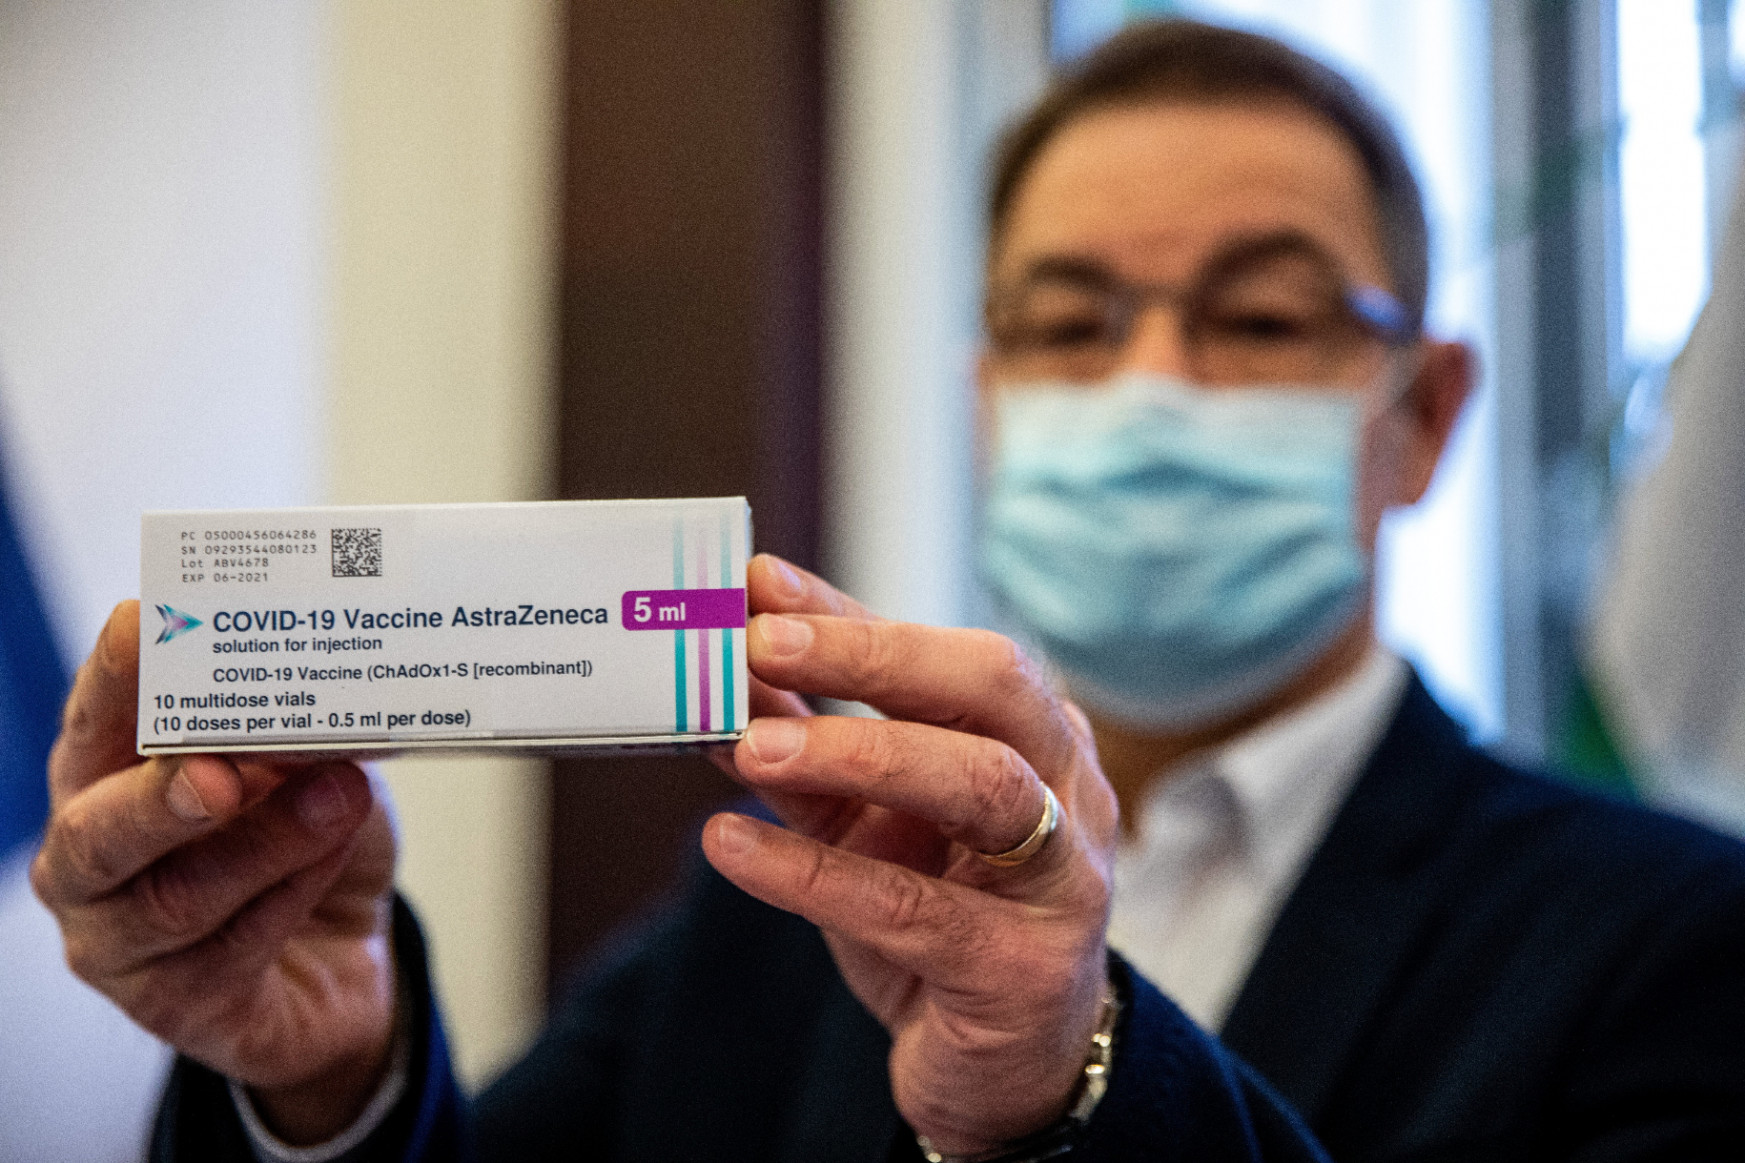 Megosztja Európát, hogy adható-e időseknek az AstraZeneca vakcinája